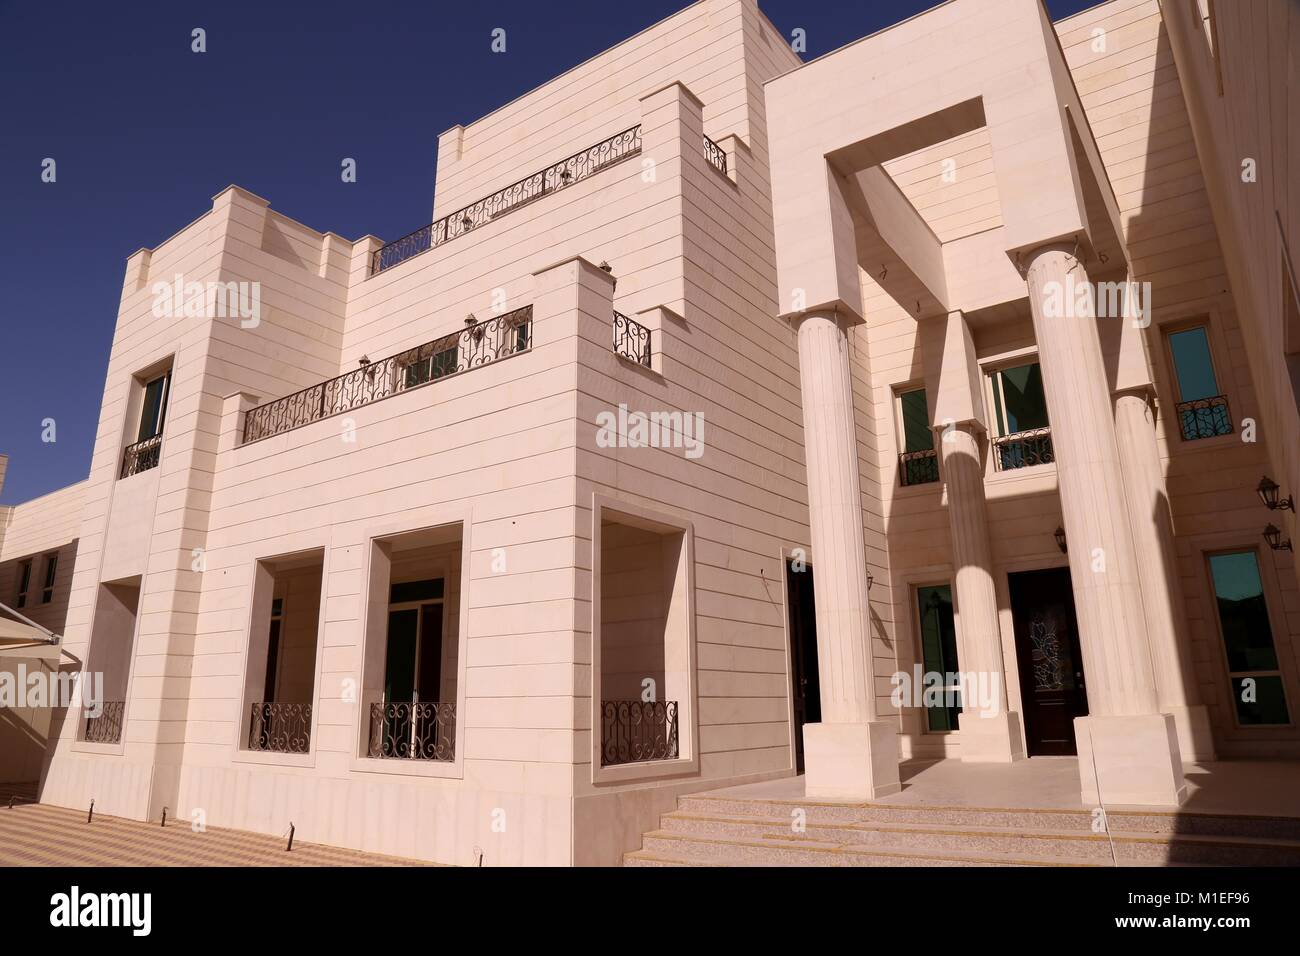 Colonnes décoratives à l'entrée d'une villa de style contemporain à Dubaï Banque D'Images